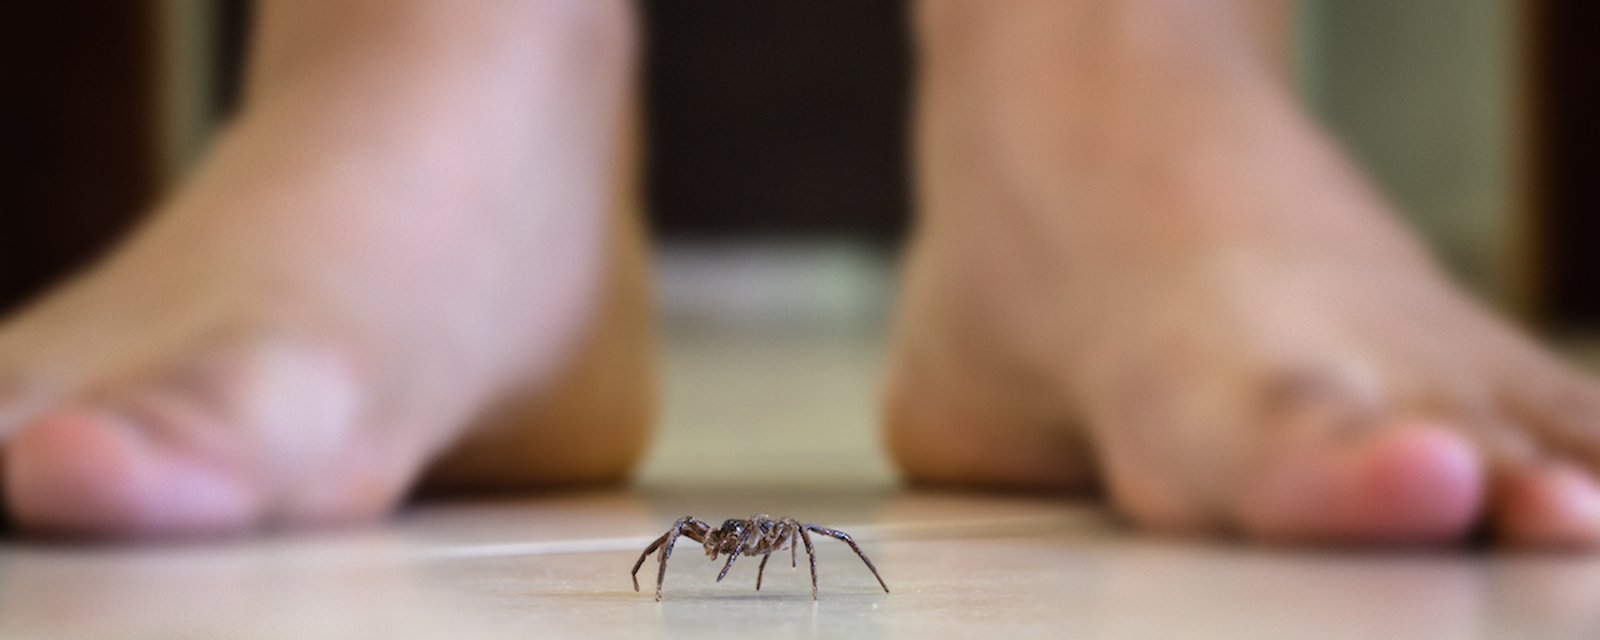 Recette maison de répulsif contre les araignées